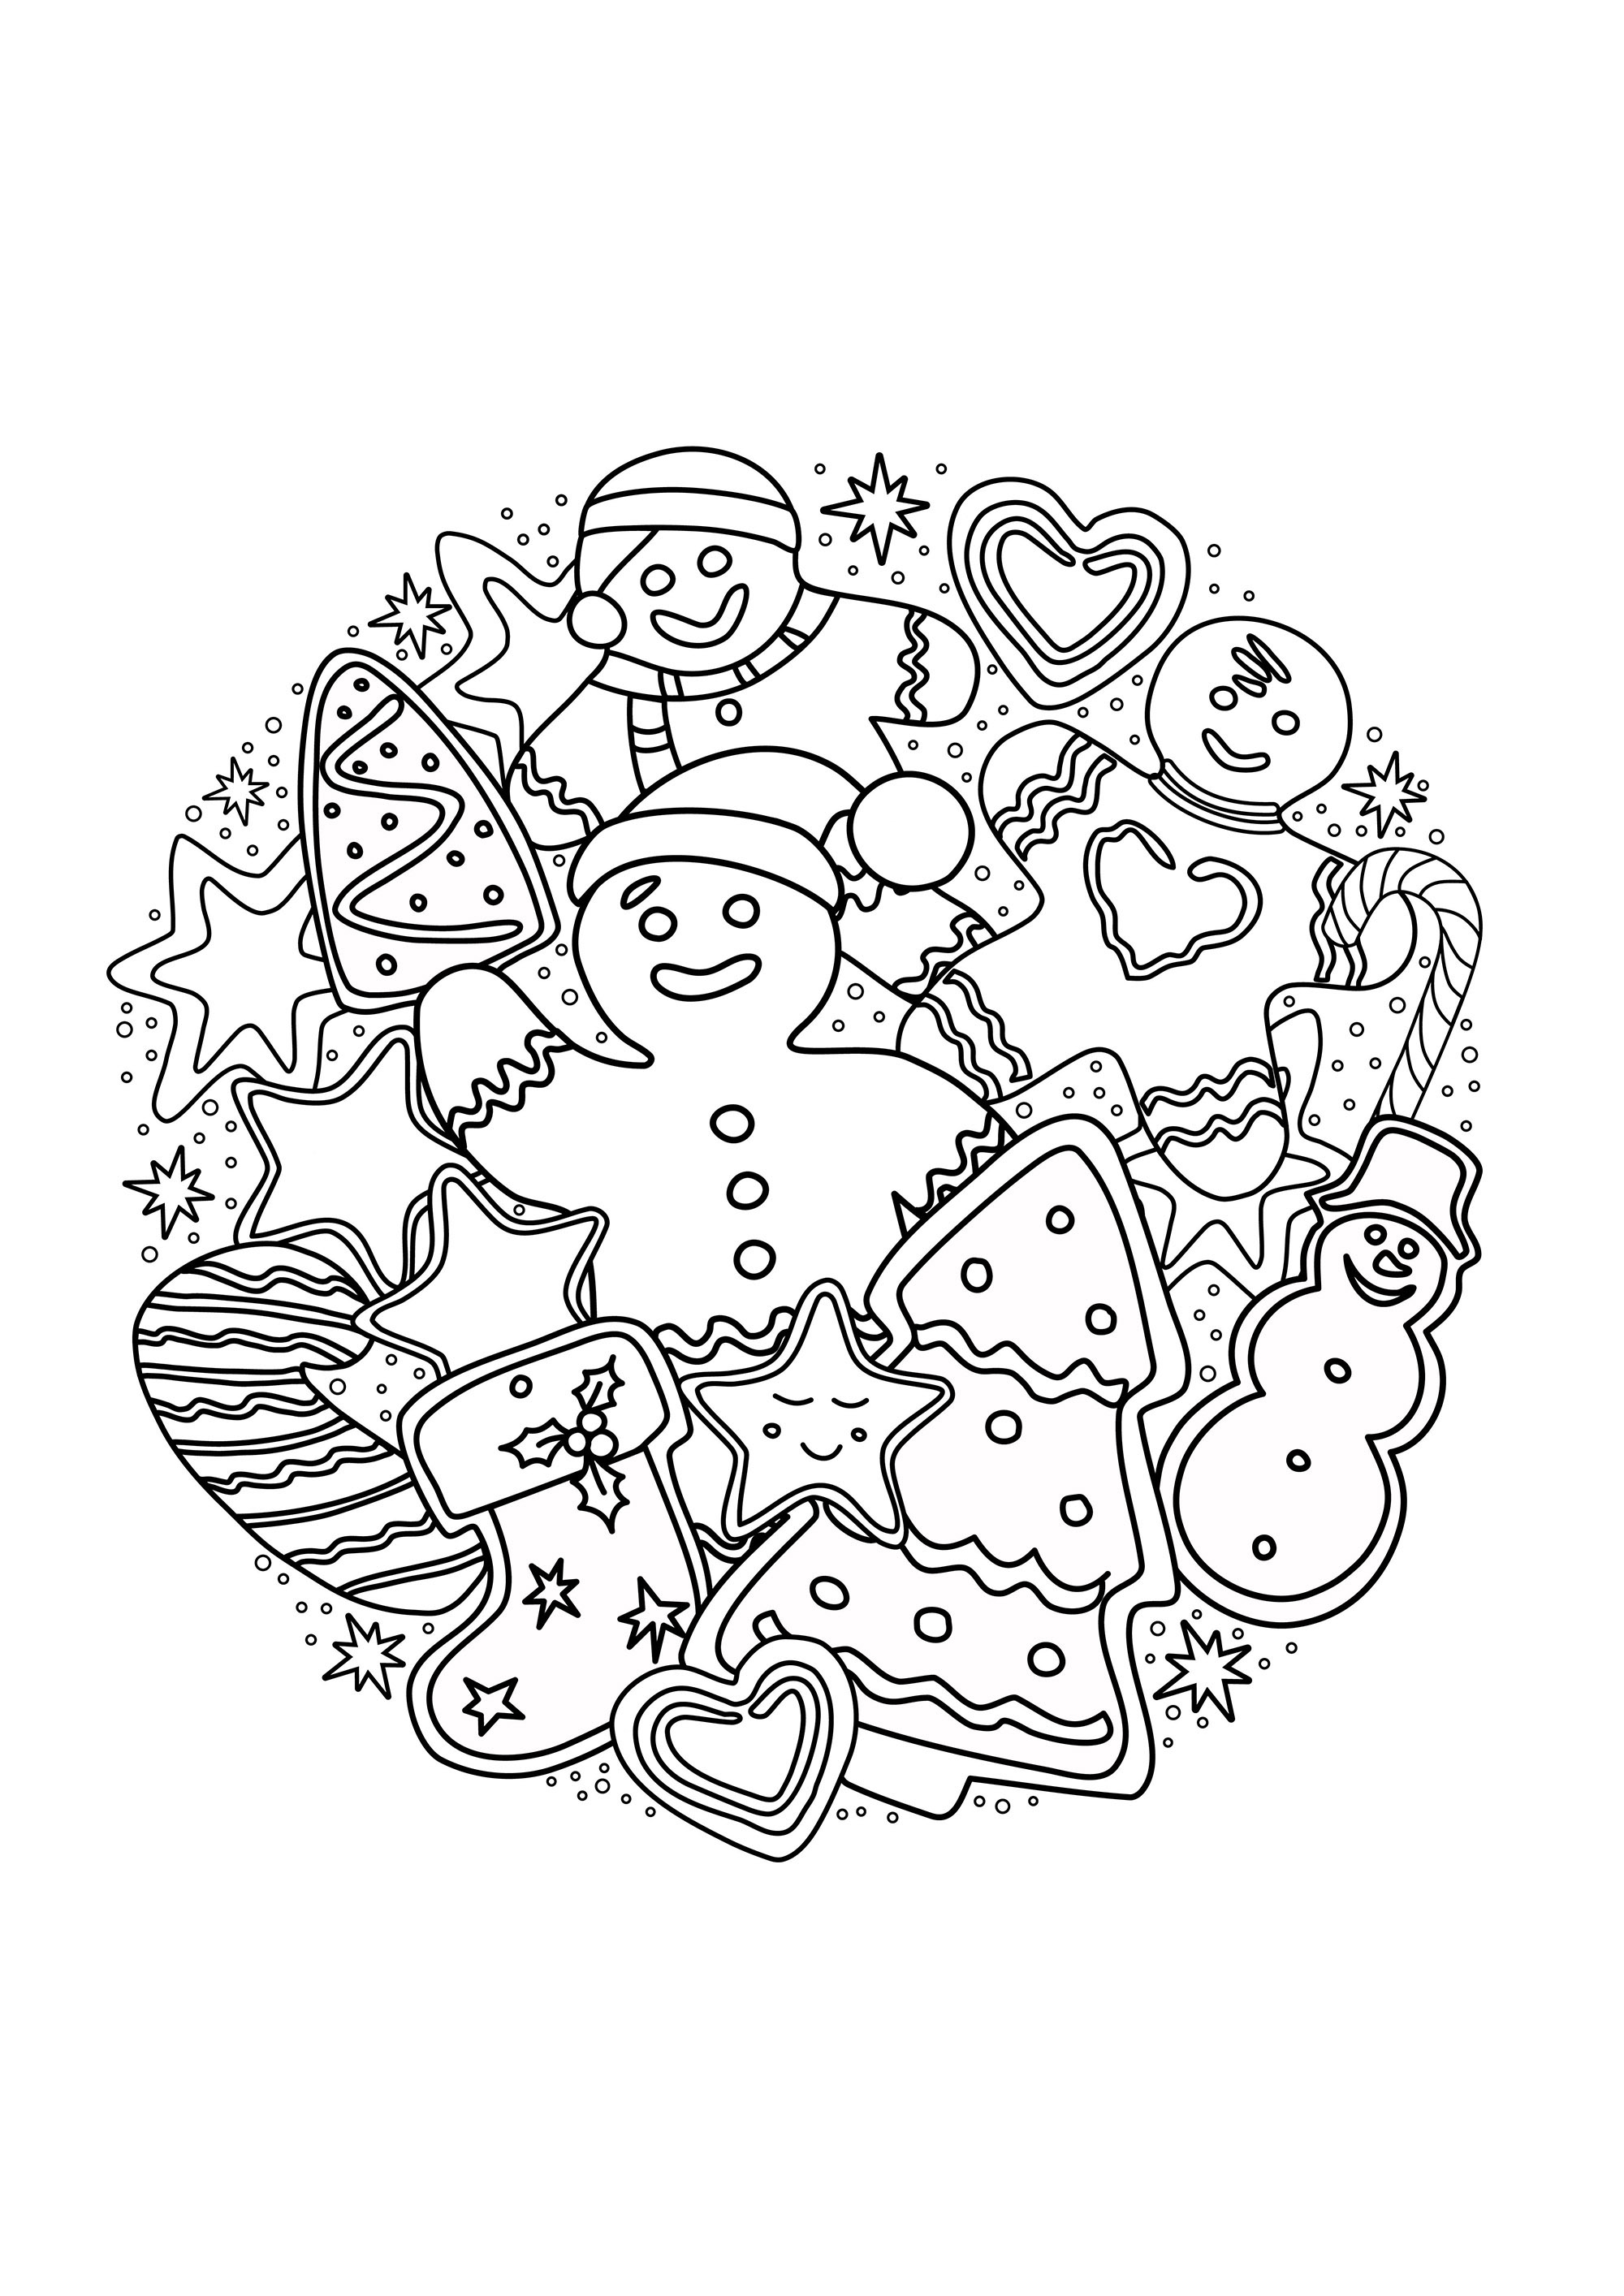 Homem de Natal em forma de pão de mel e outros motivos natalícios numa bonita mandala para colorir